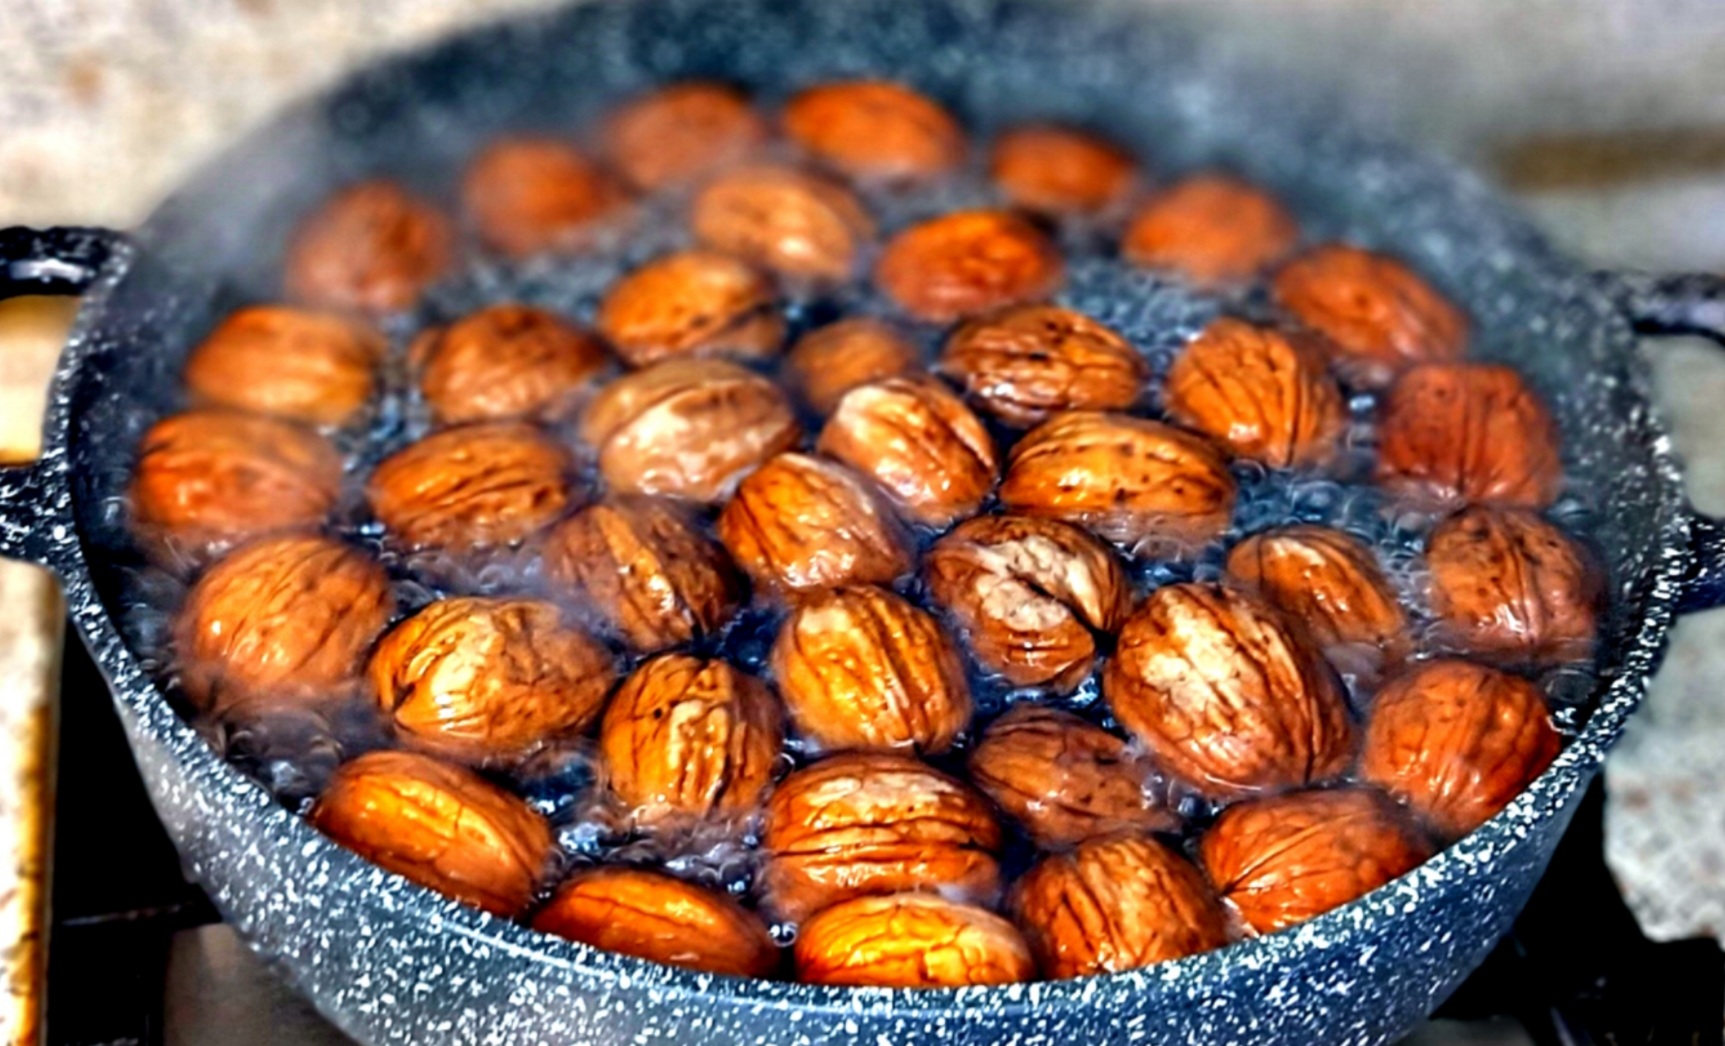 Исследователь нагревал плоды грецкого ореха в сушильном шкафу при температуре 105 градусов